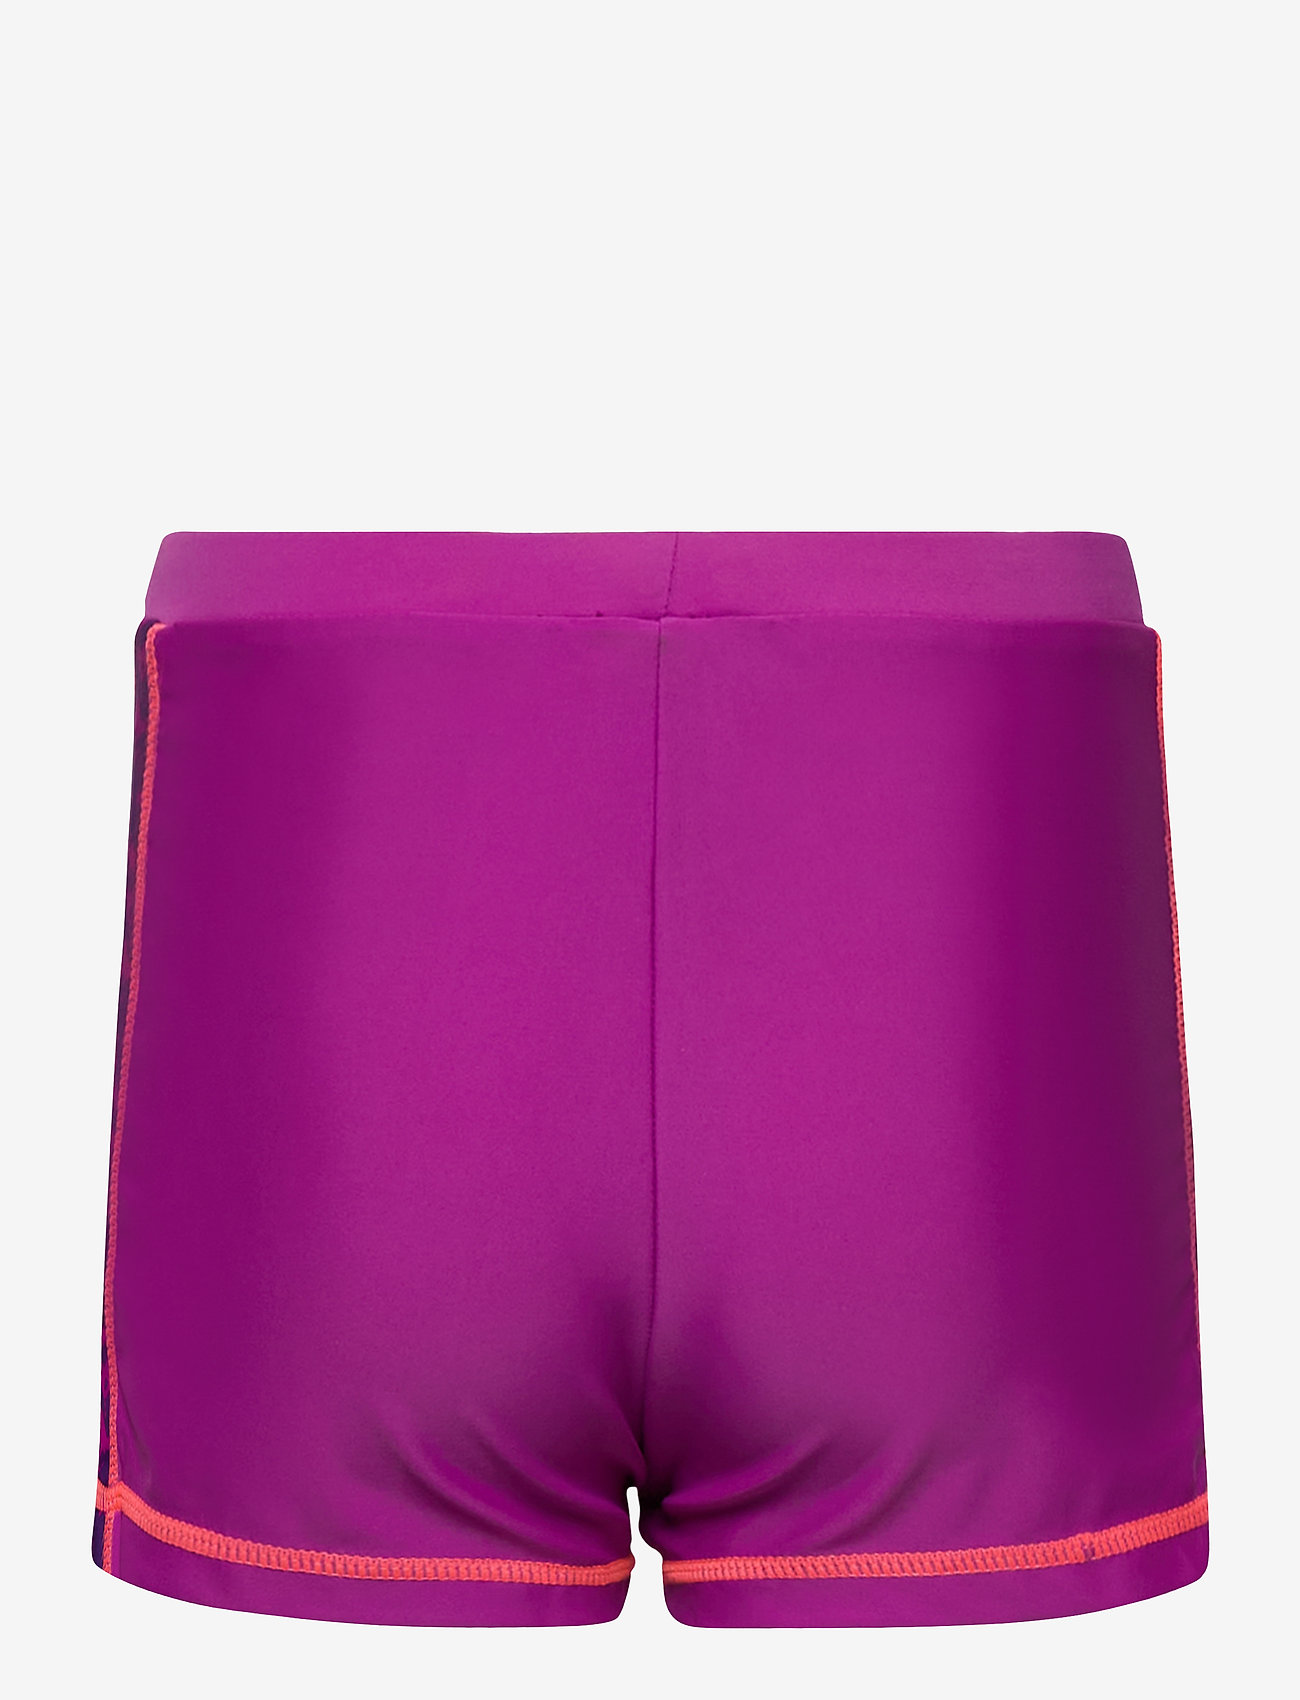 ZigZag - Logone UVA Girls Swim Shorts - summer savings - purple flower - 1